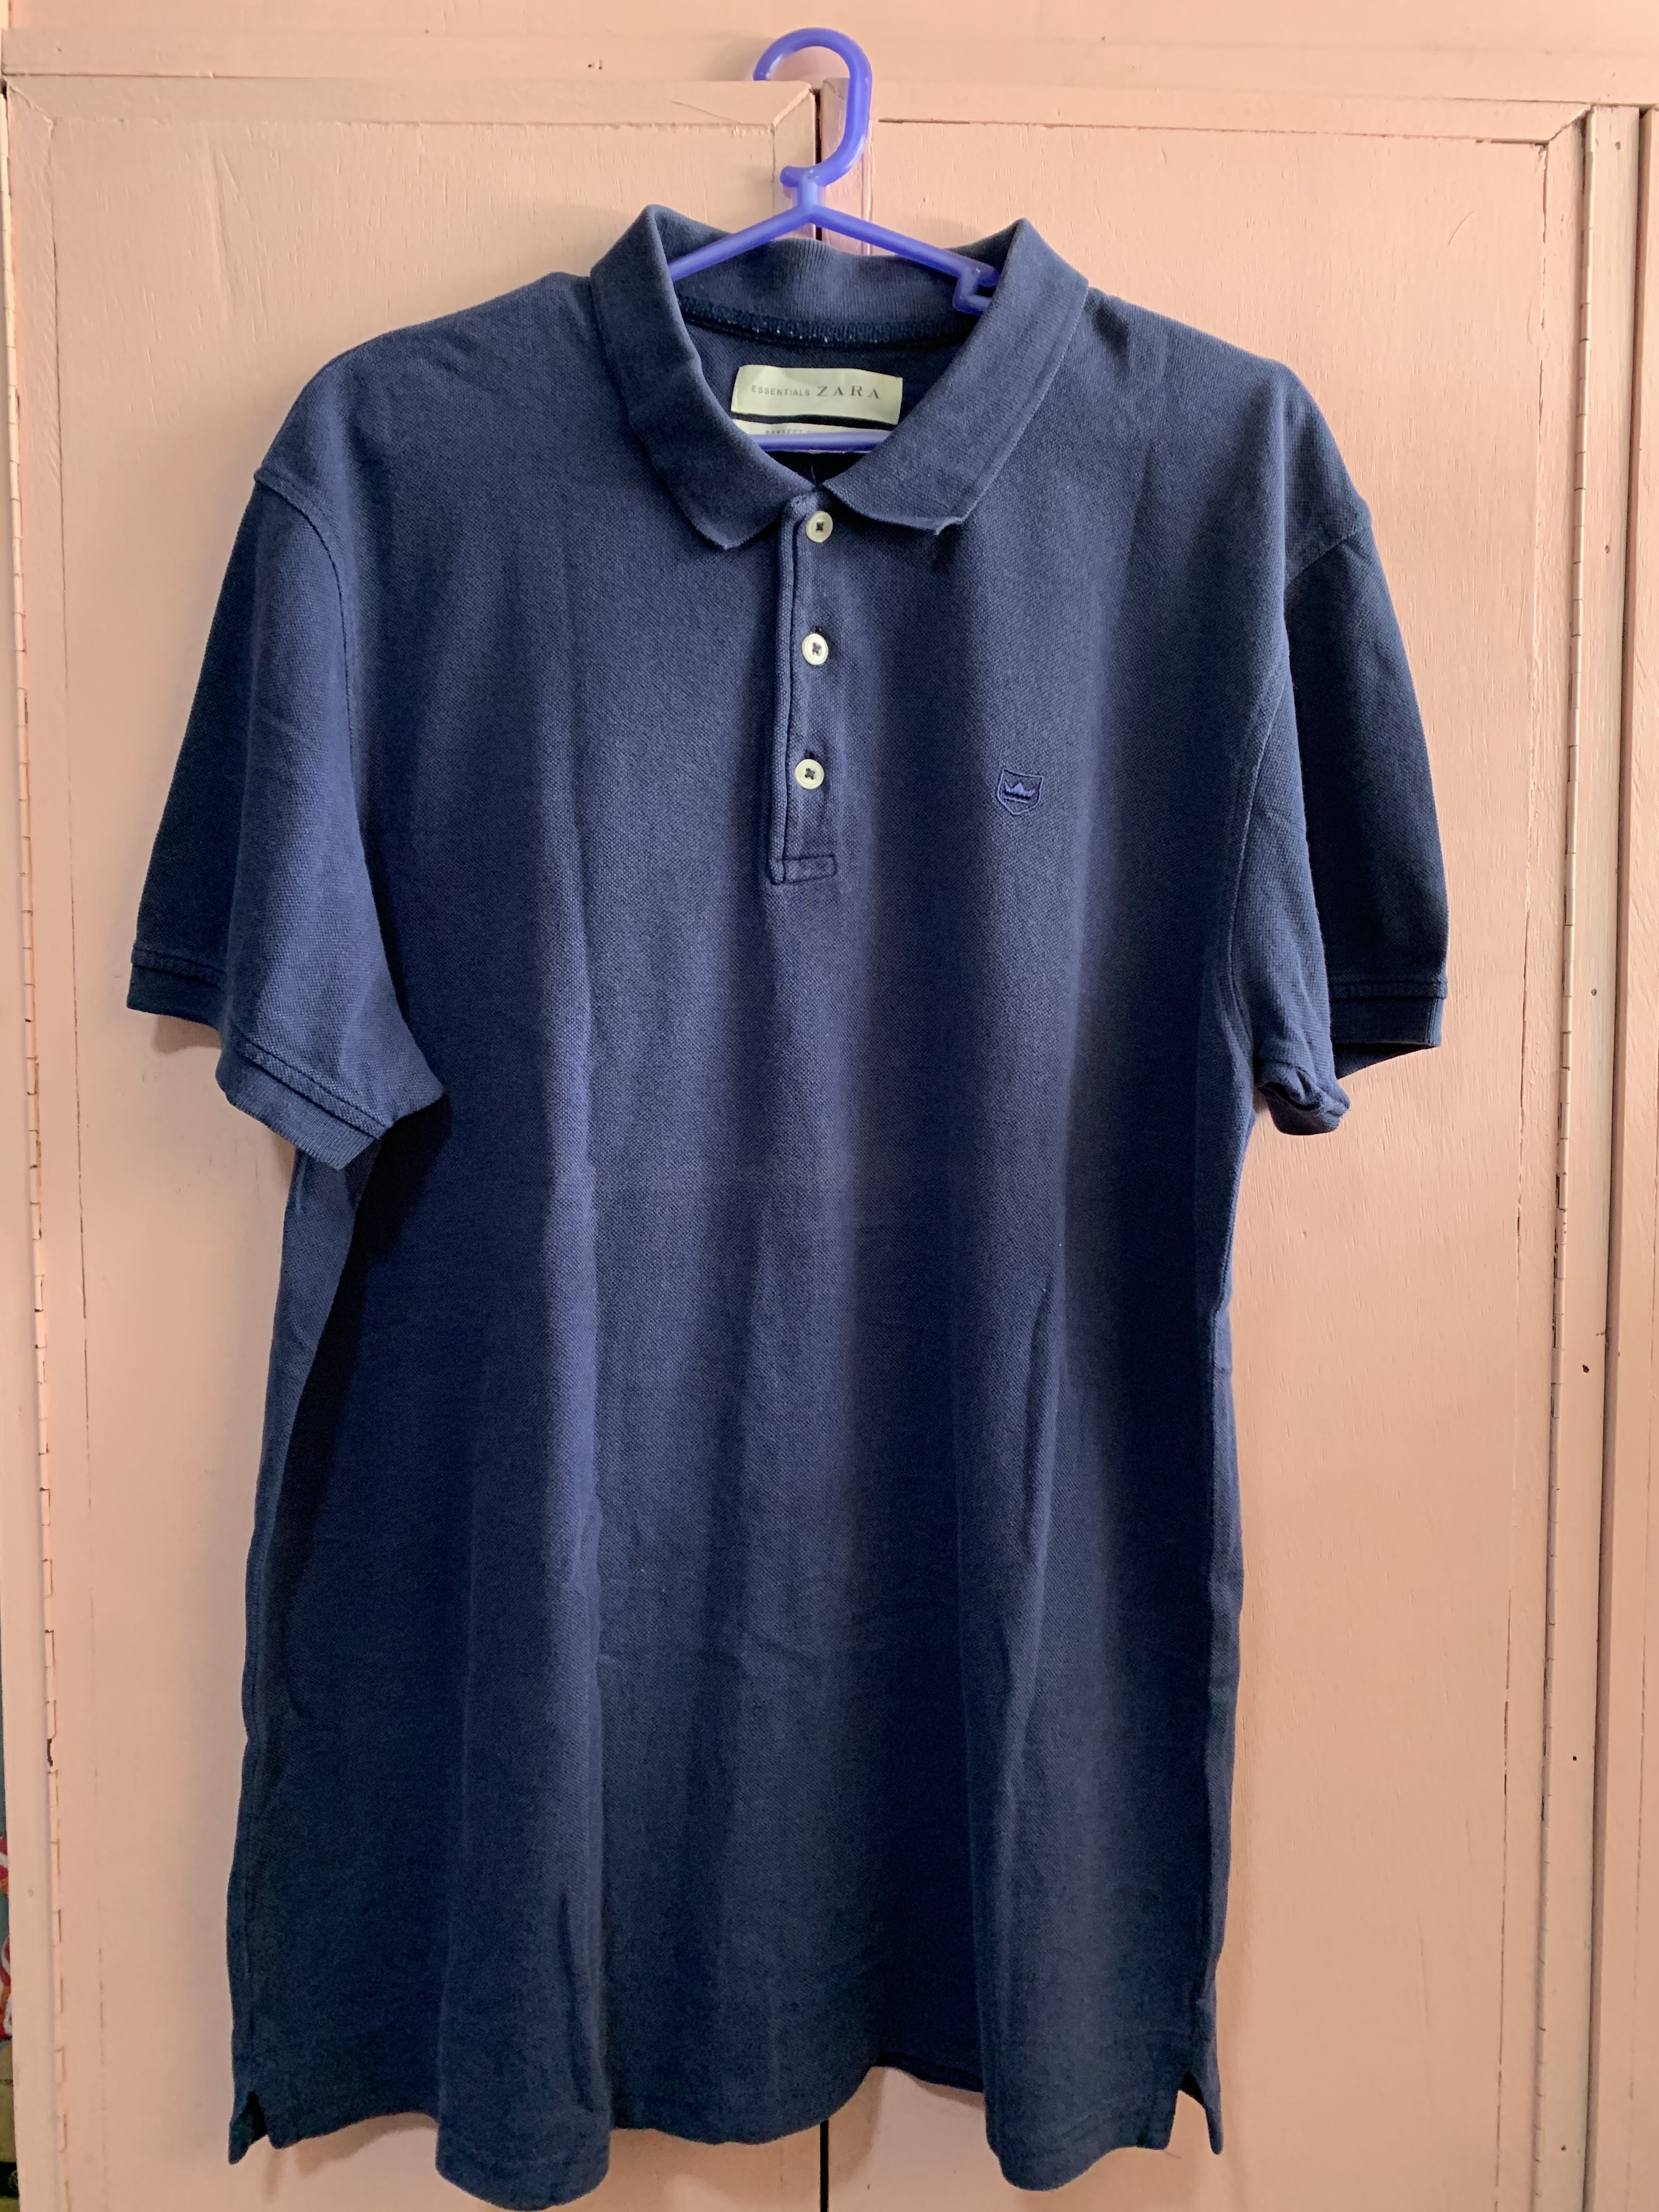 Zara Blue Perfect Polo Shirt MEN’S XL, Men's Fashion, Tops & Sets ...